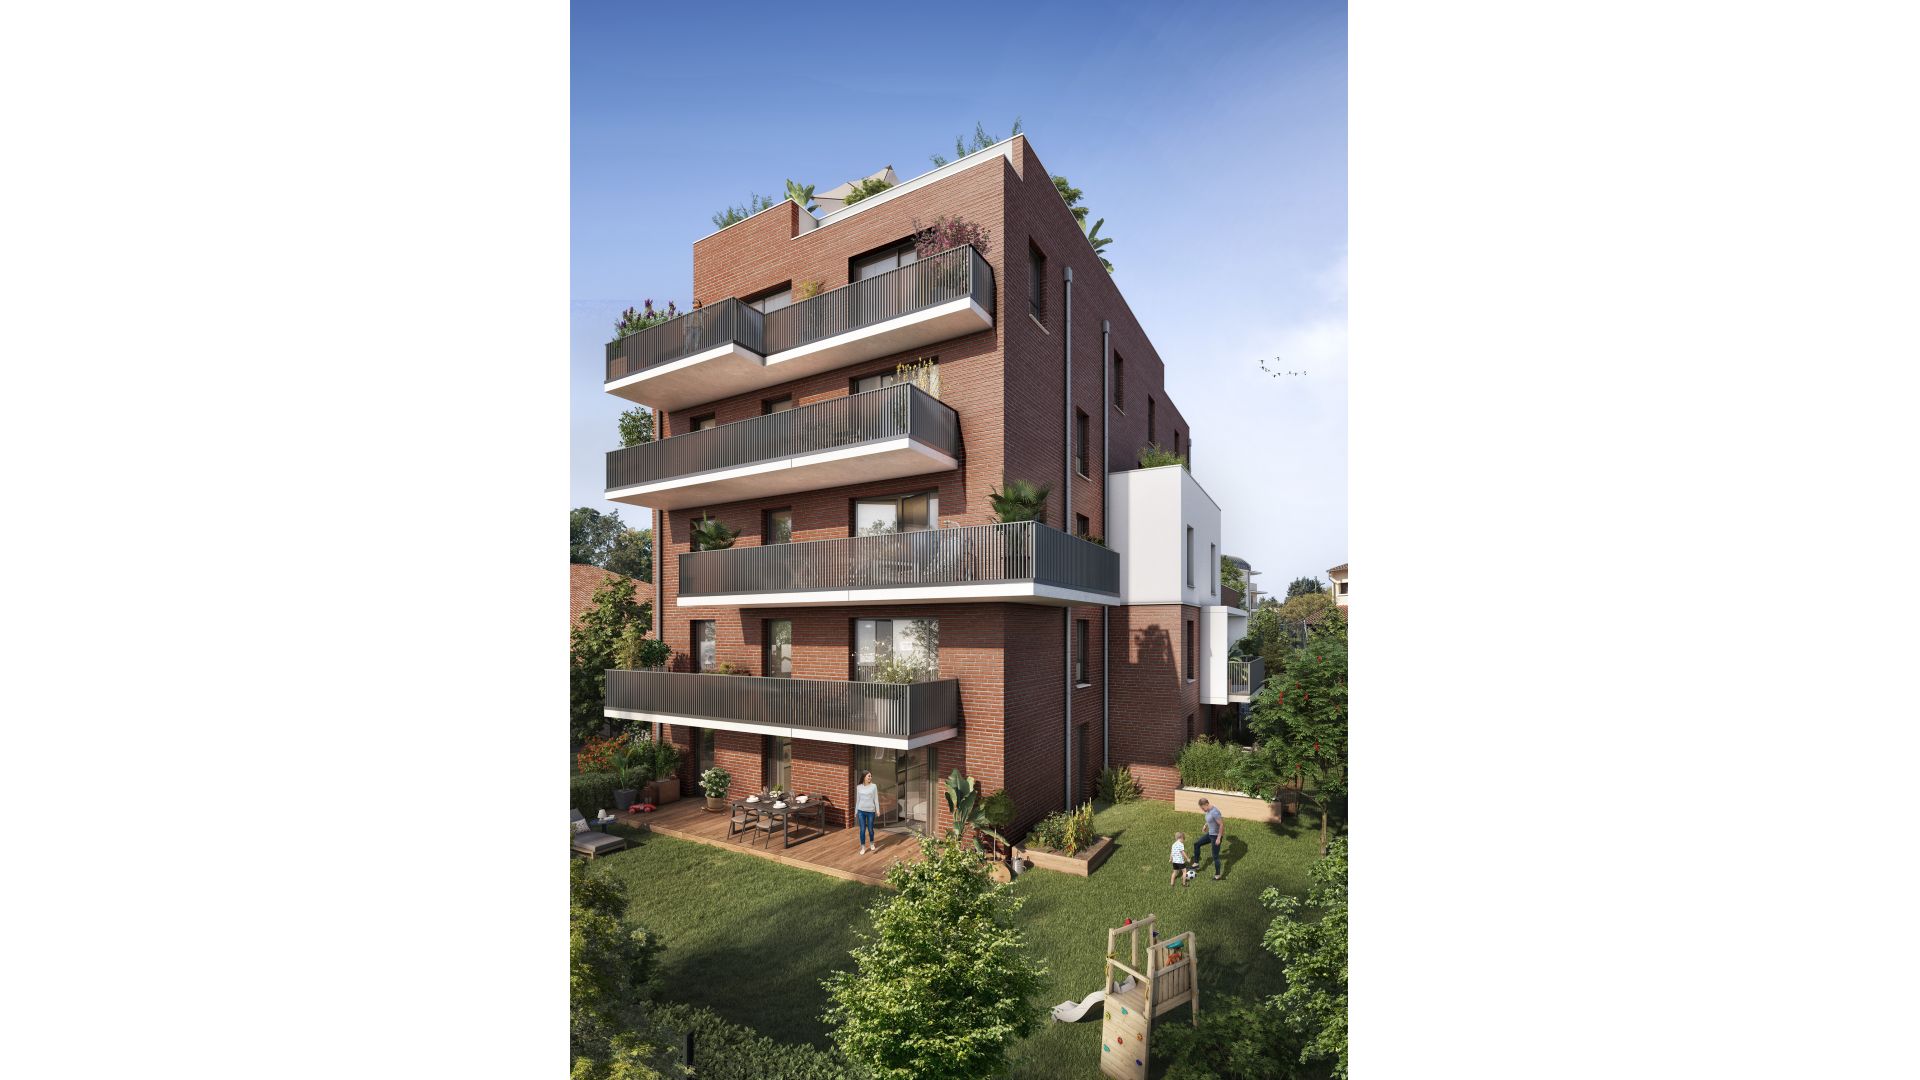 Greencity immobilier - achat appartements neufs du T2 au T6 - Résidence Le Saint-Louis - 31400 - Toulouse Côte Pavé - vue jardin